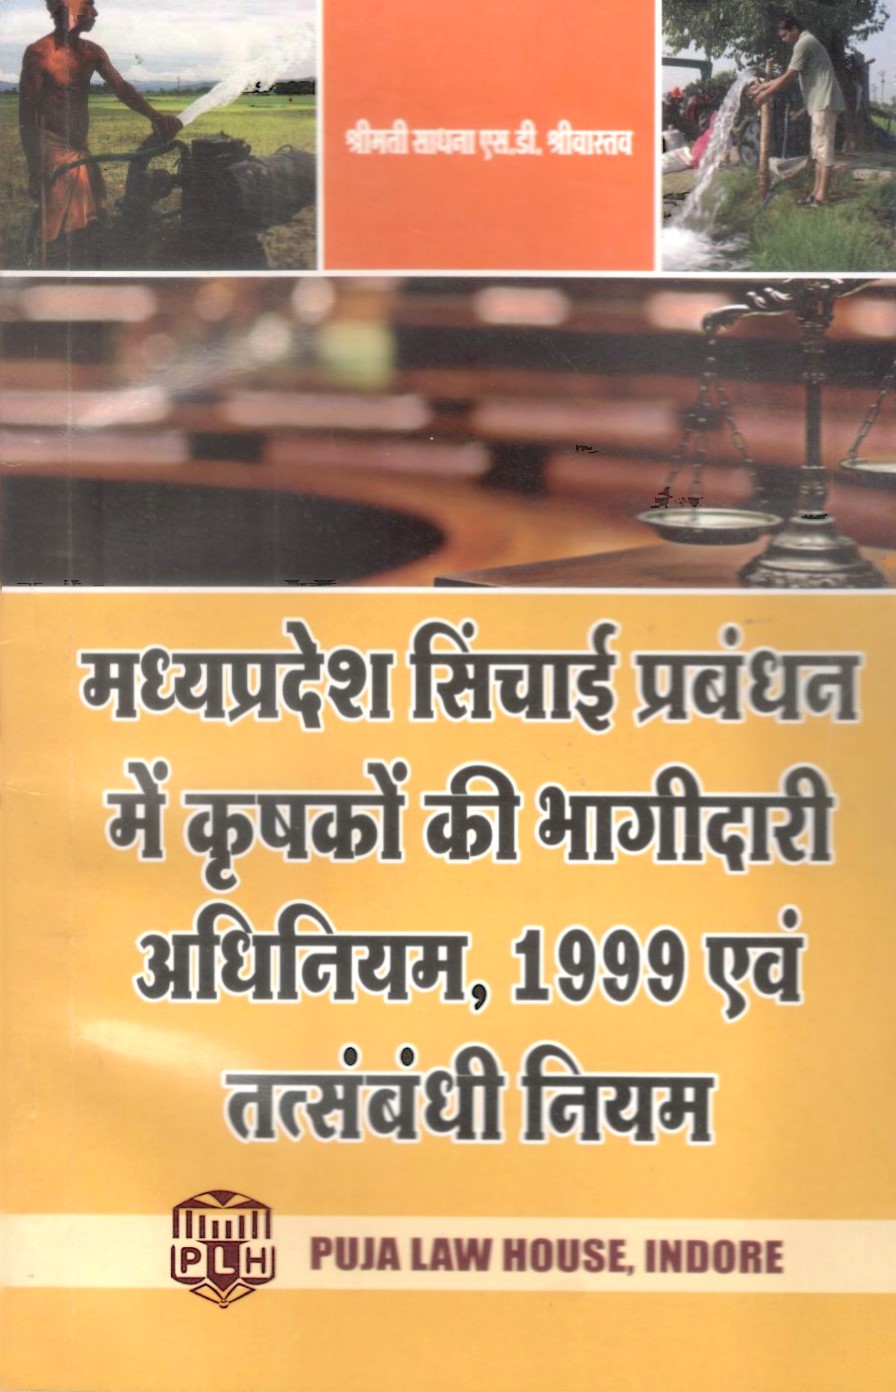 मध्य प्रदेश सिंचाई  प्रबंधन में  कृषकों की भागीदारी अधिनियम , 1999 एवं तत्संबंधी नियम / Madhya Pradesh Farmers Participation in Irrigation Management Act, 1999 and related rules